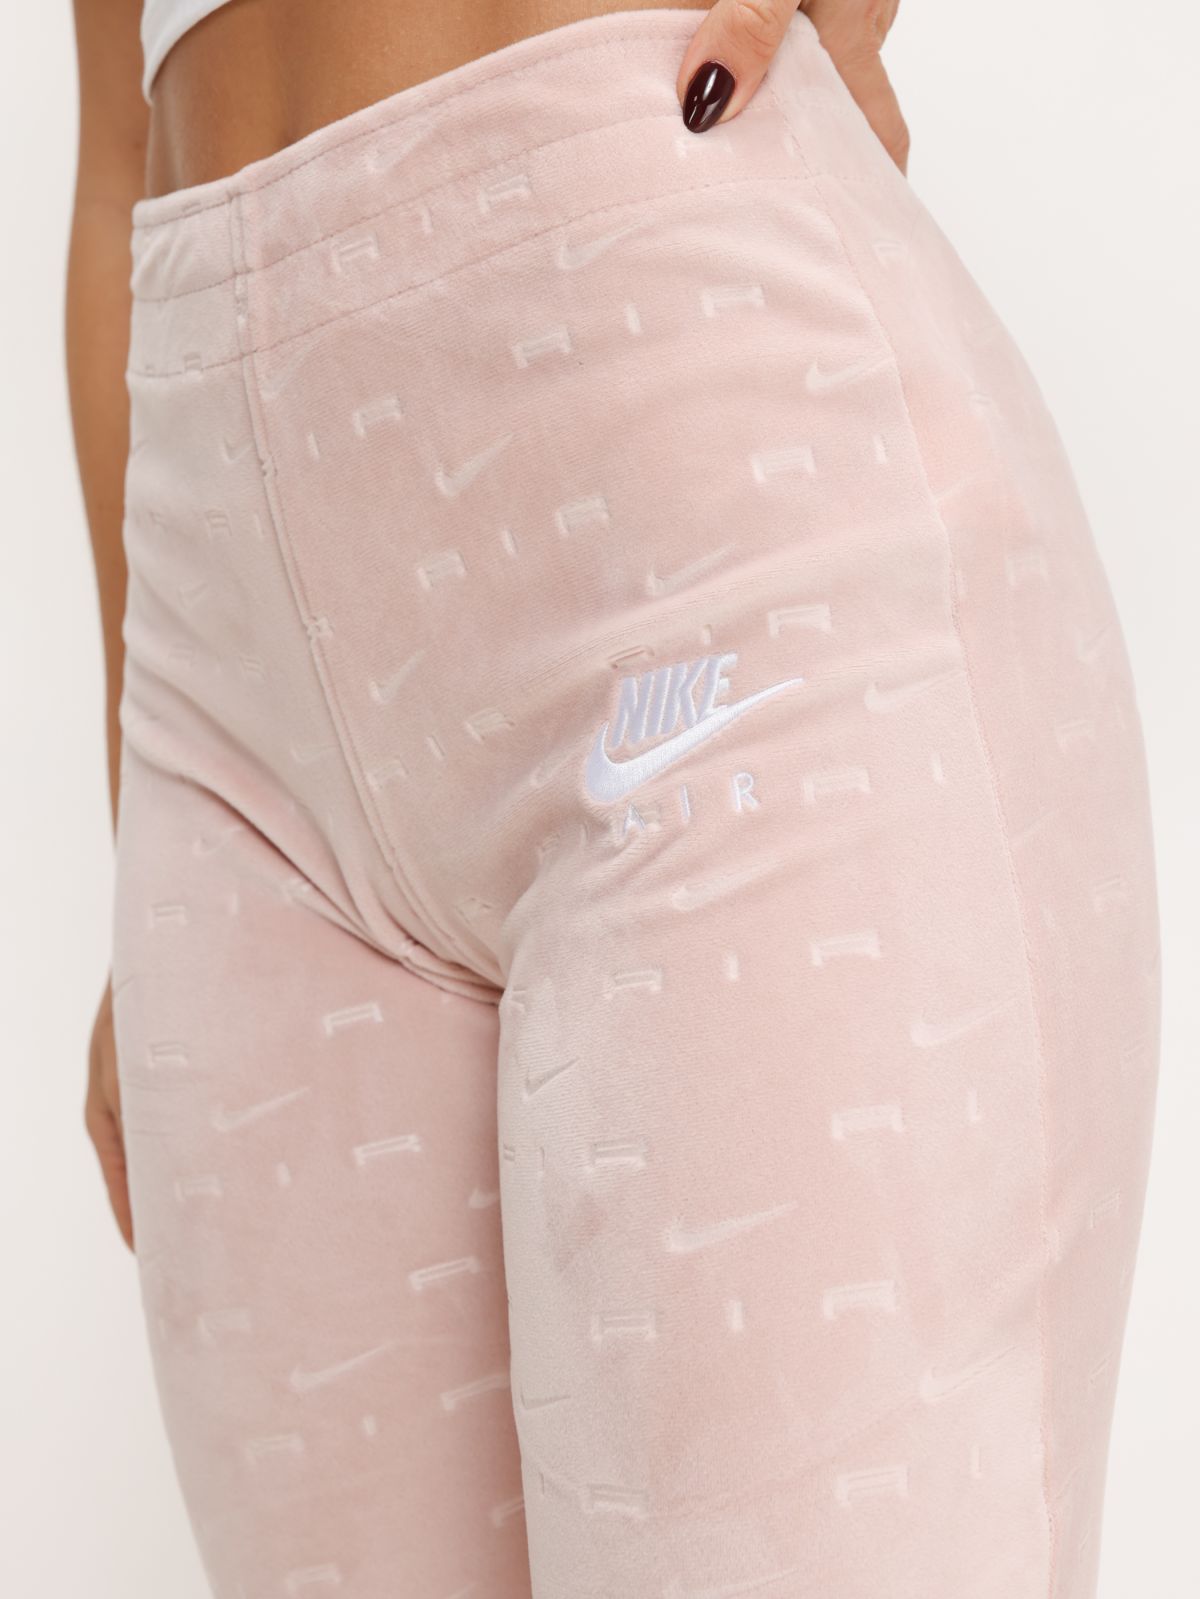  מכנסי קטיפה בהדפס לוגו  Nike Air של NIKE